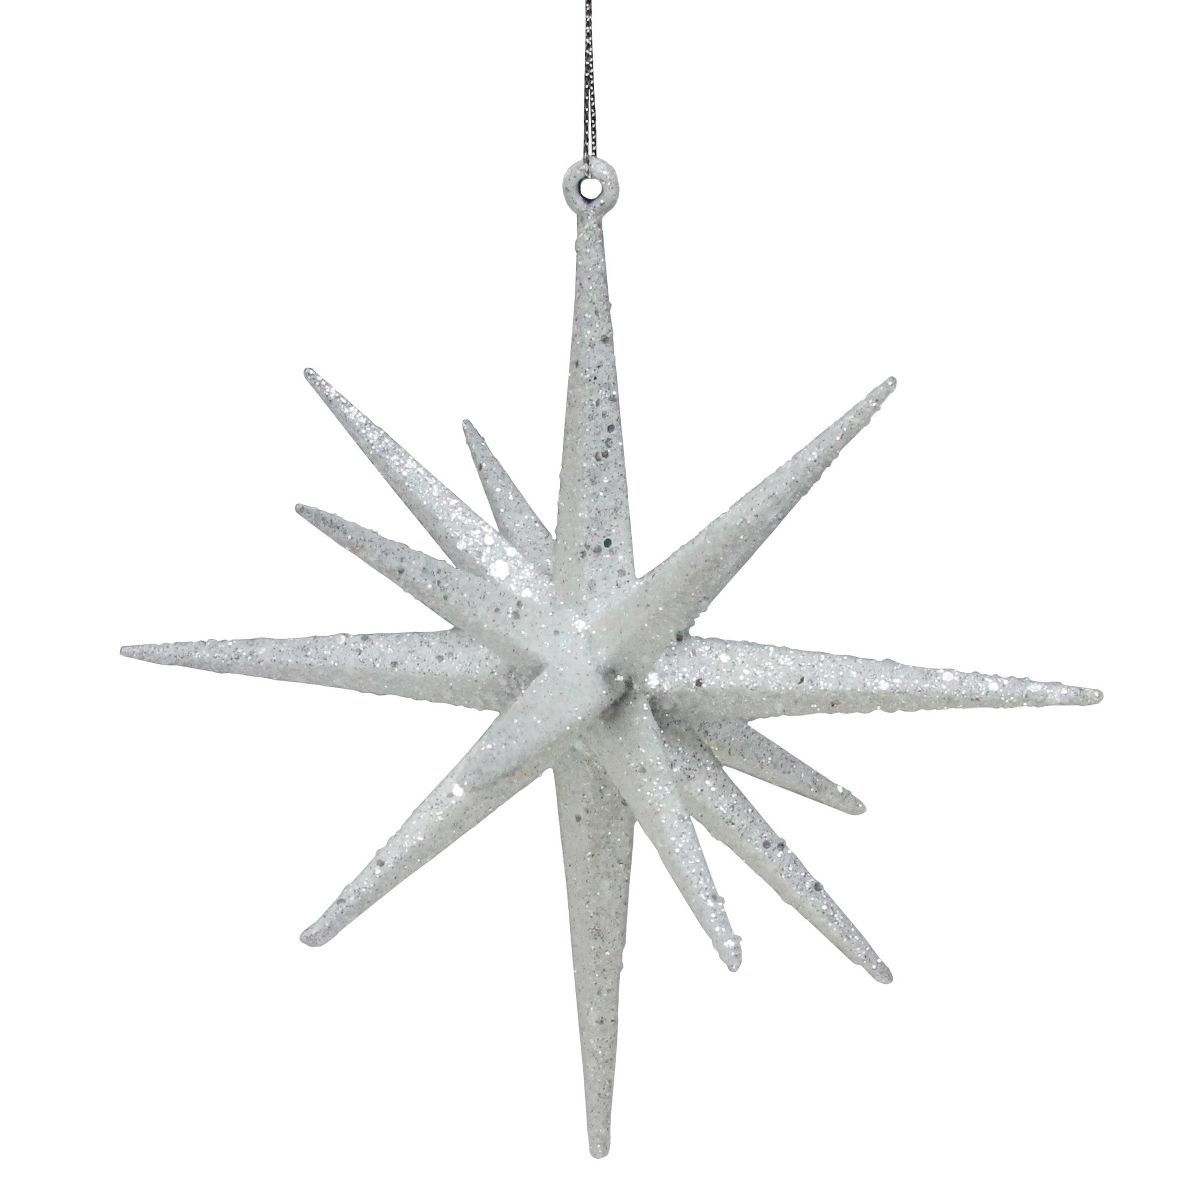 Northlight 6" White Glittered Starburst Christmas Ornament | Target